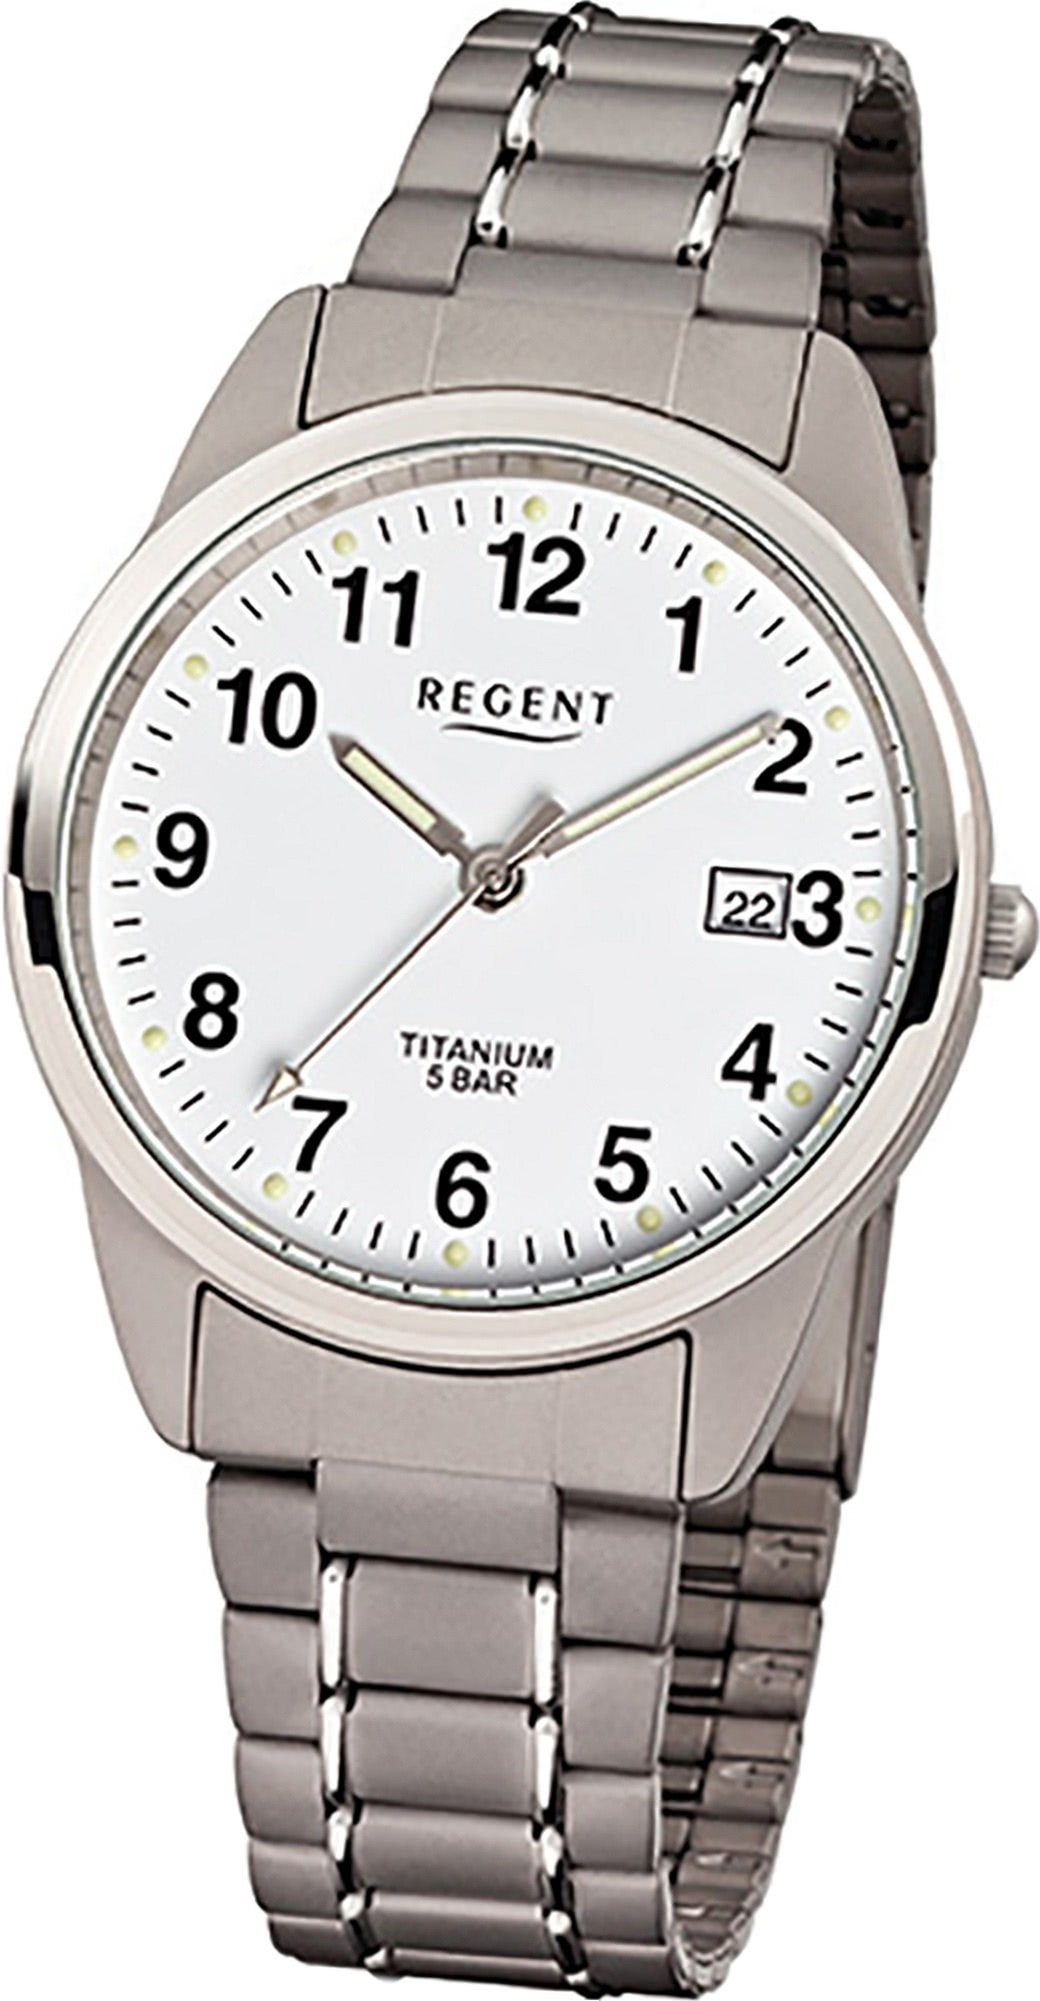 (Metall) mittel Gehäuse, Titan Herrenuhr Quarzuhr grau, Uhr (ca. F-432, Regent Herren silber, 36mm) Titanarmband Regent rundes